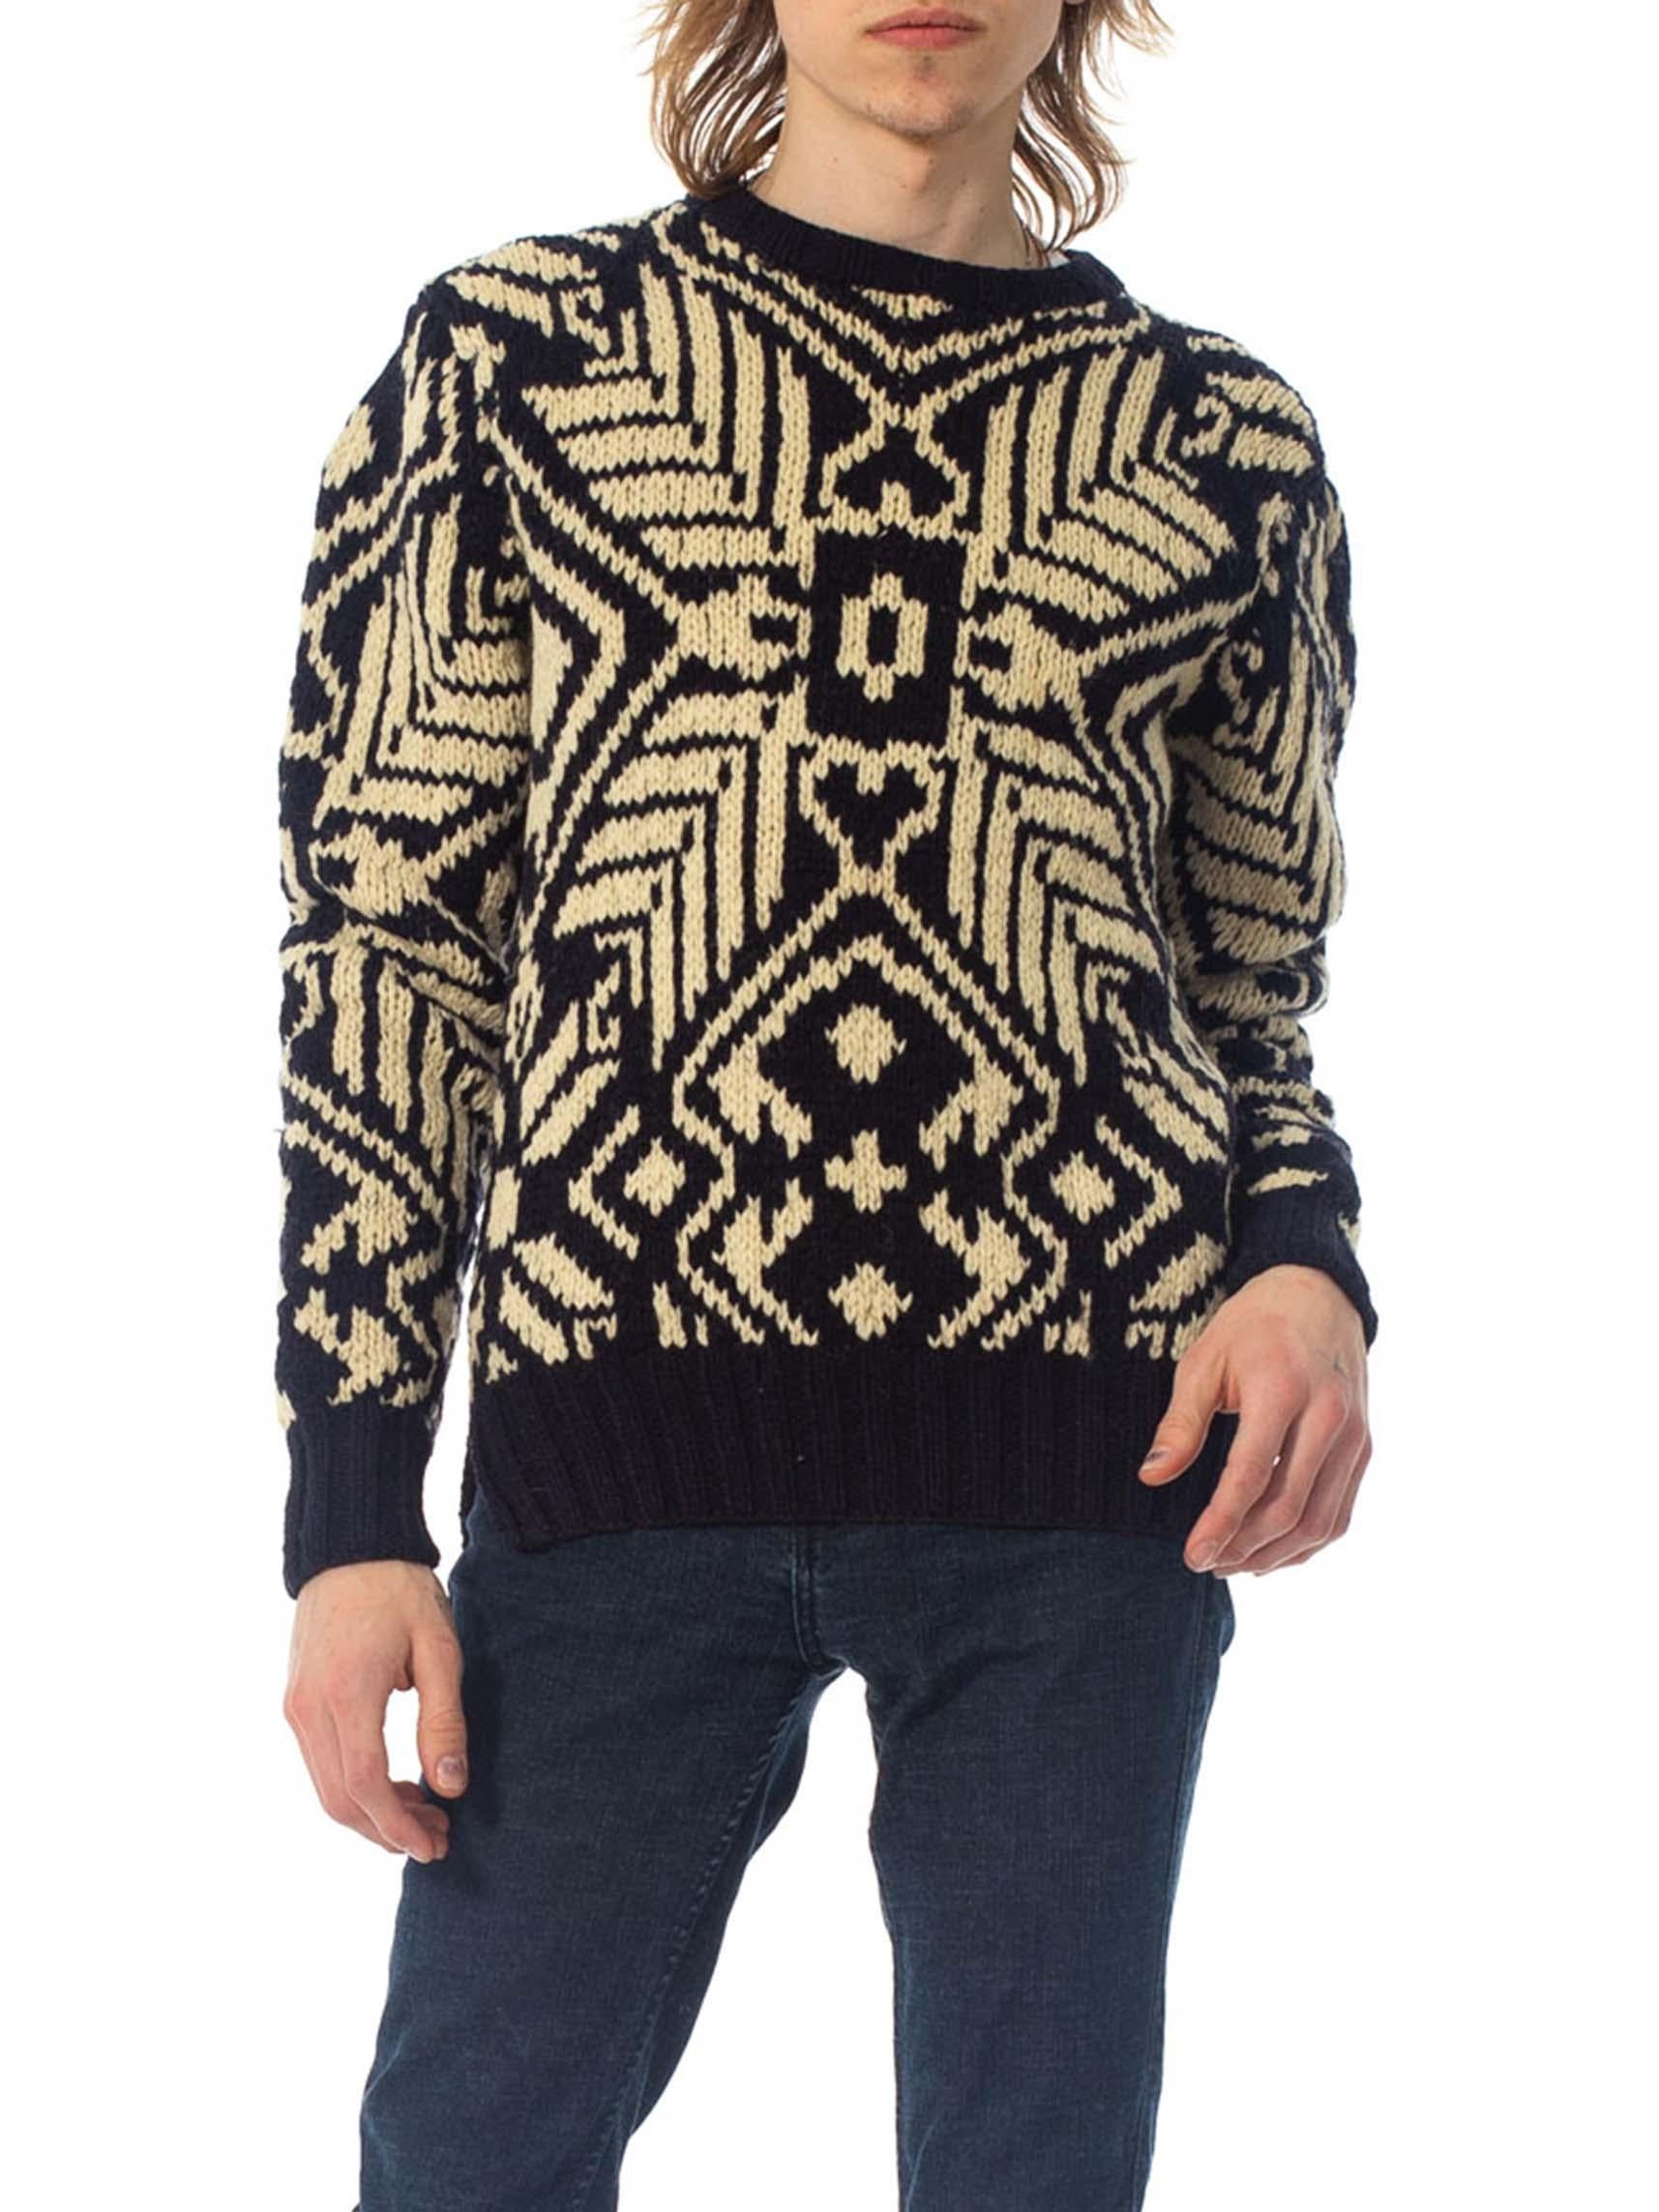 ralph lauren nordic sweater